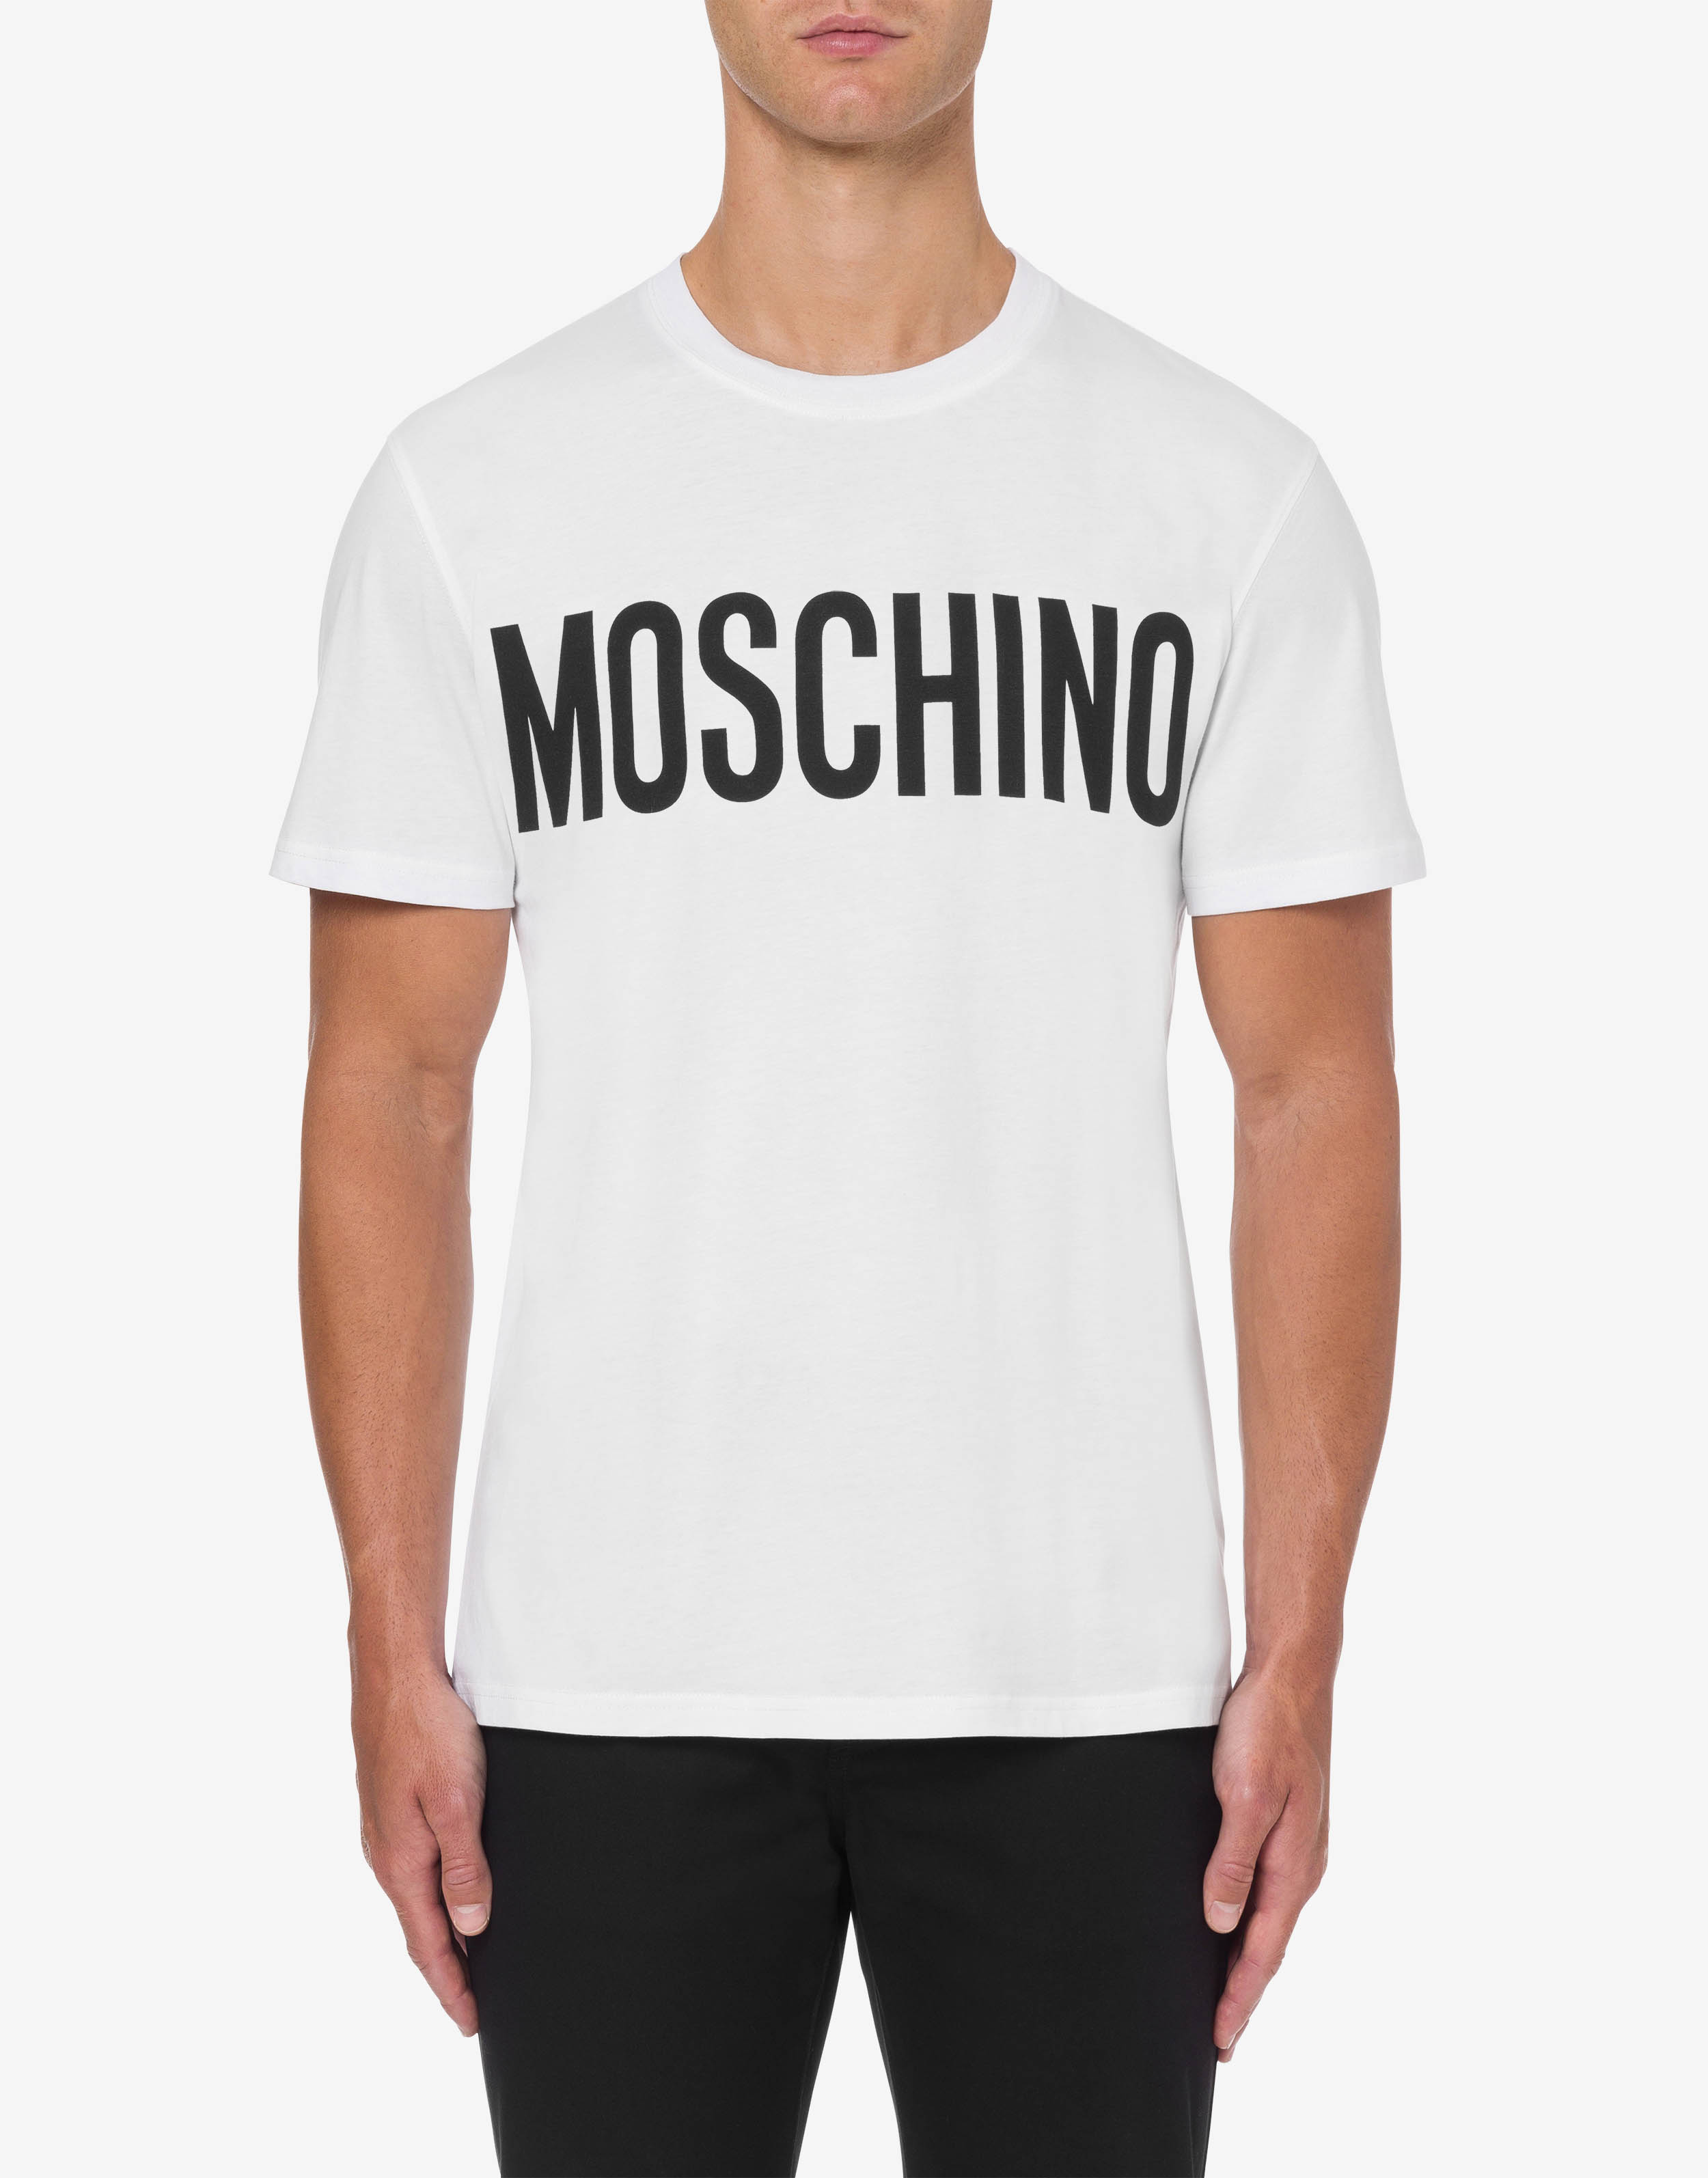 Moschino - T-shirt branca em algodão orgânico com o logótipo